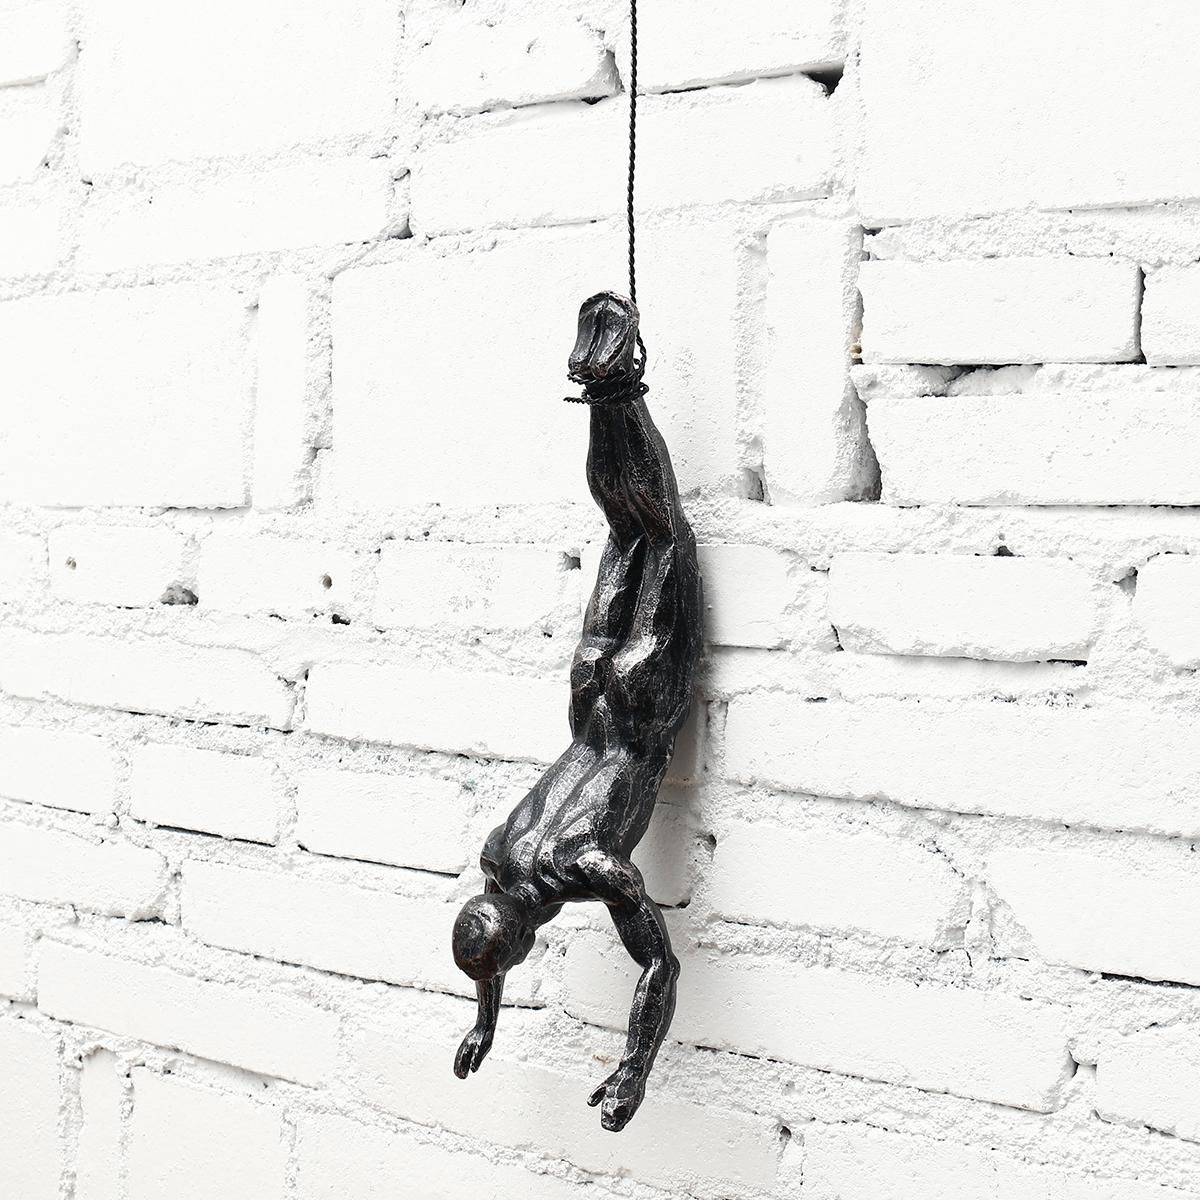 Handmade Global View Iron Man Climbing Rope Wall Mounted Art Sculpture Climber 